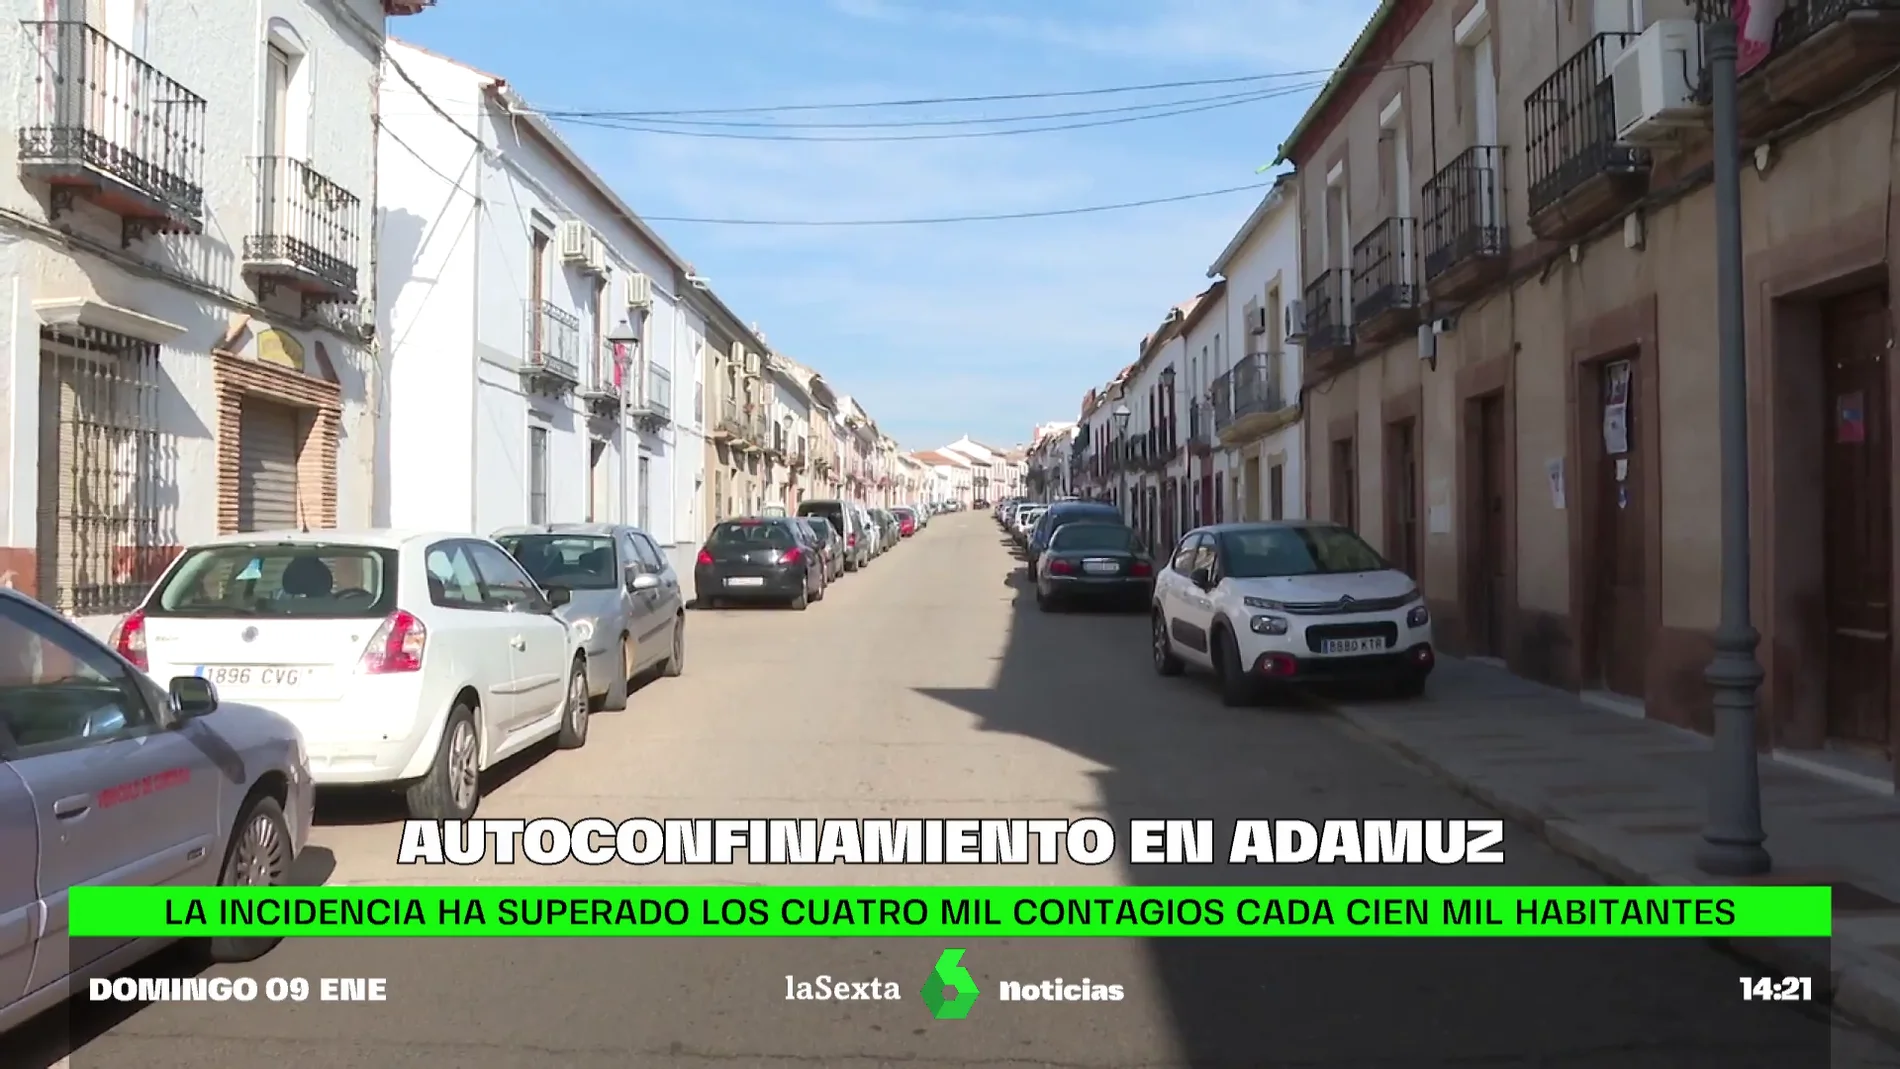 El alcalde de Adamuz (Córdoba) llama a sus ciudadanos a autoconfinarse